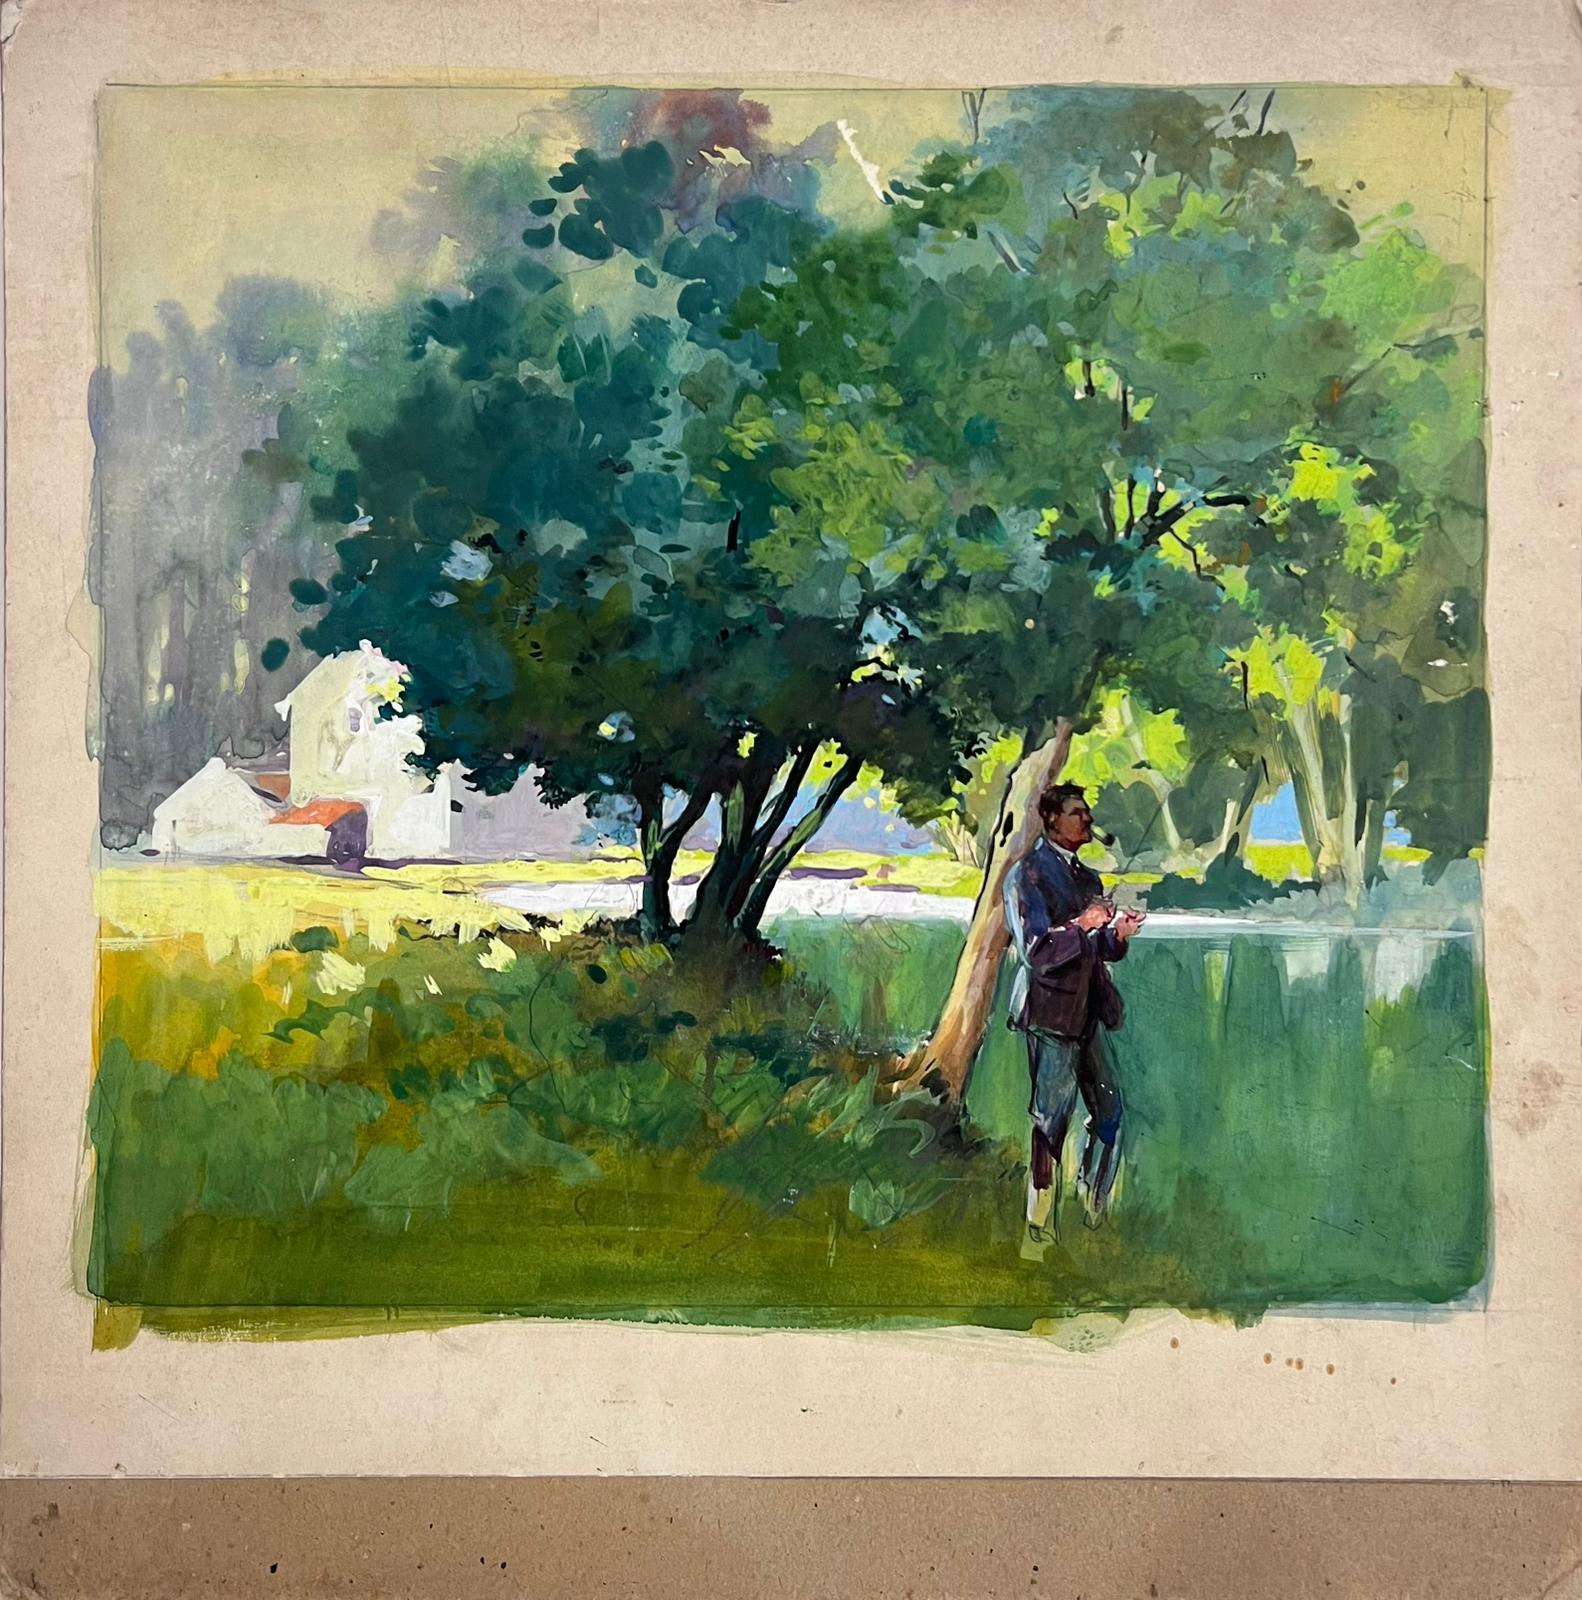 Peinture impressionniste britannique du milieu du 20e siècle Homme debout dans un champ vert - Painting de Frank Duffield